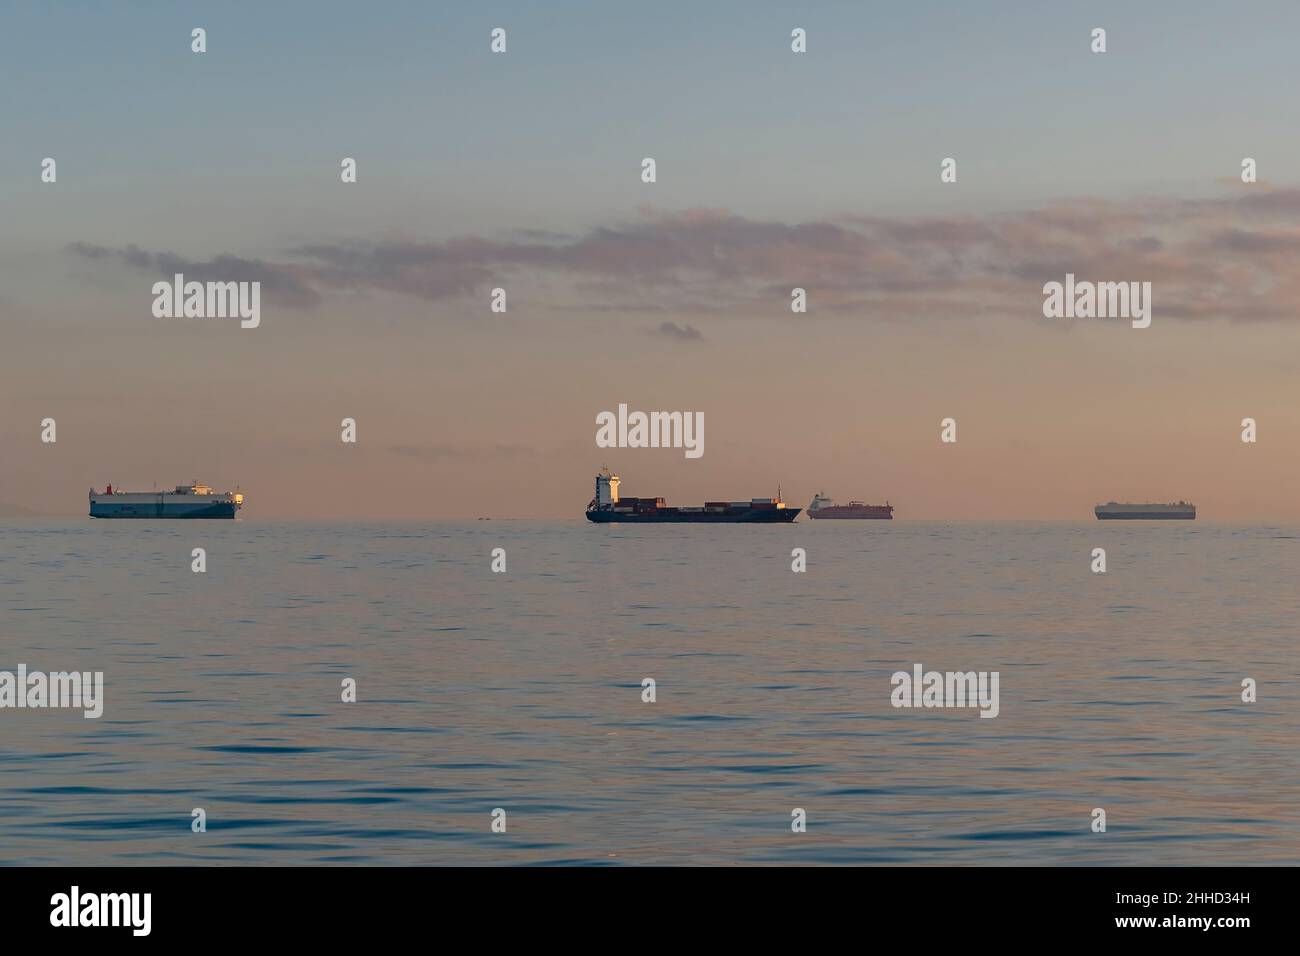 Cuatro grandes barcos de contenedores navegan en la línea del horizonte a la luz del atardecer Foto de stock